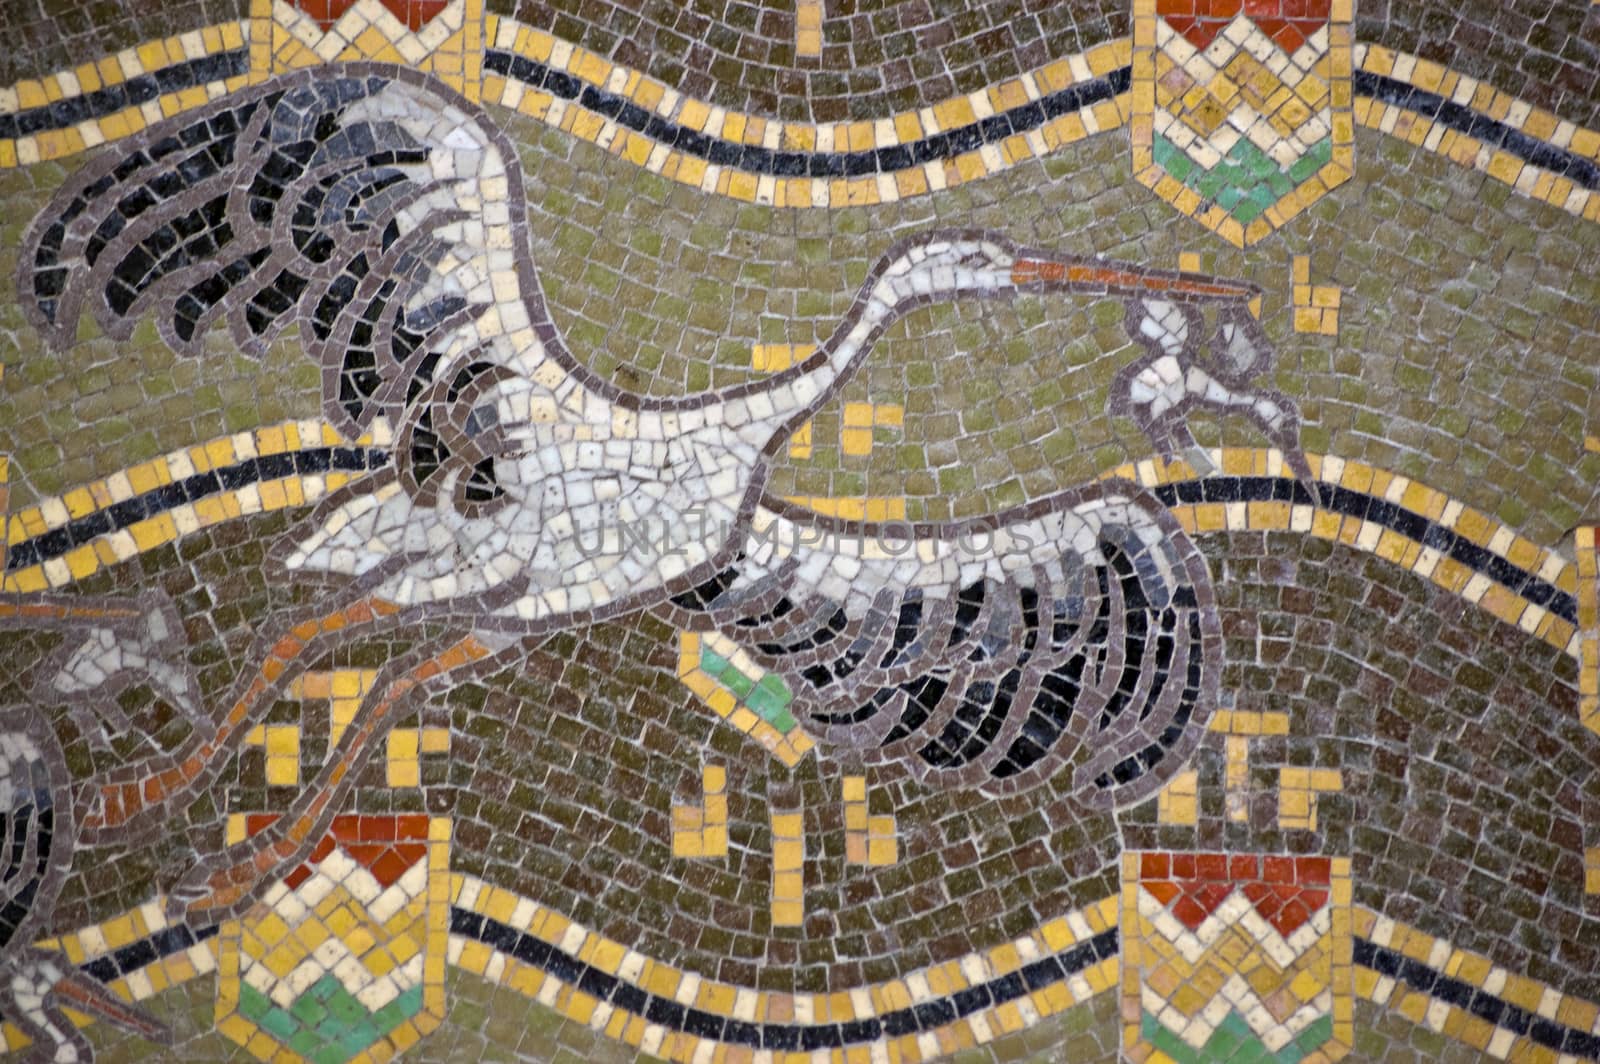 Storks mosaic, Venice by BasPhoto